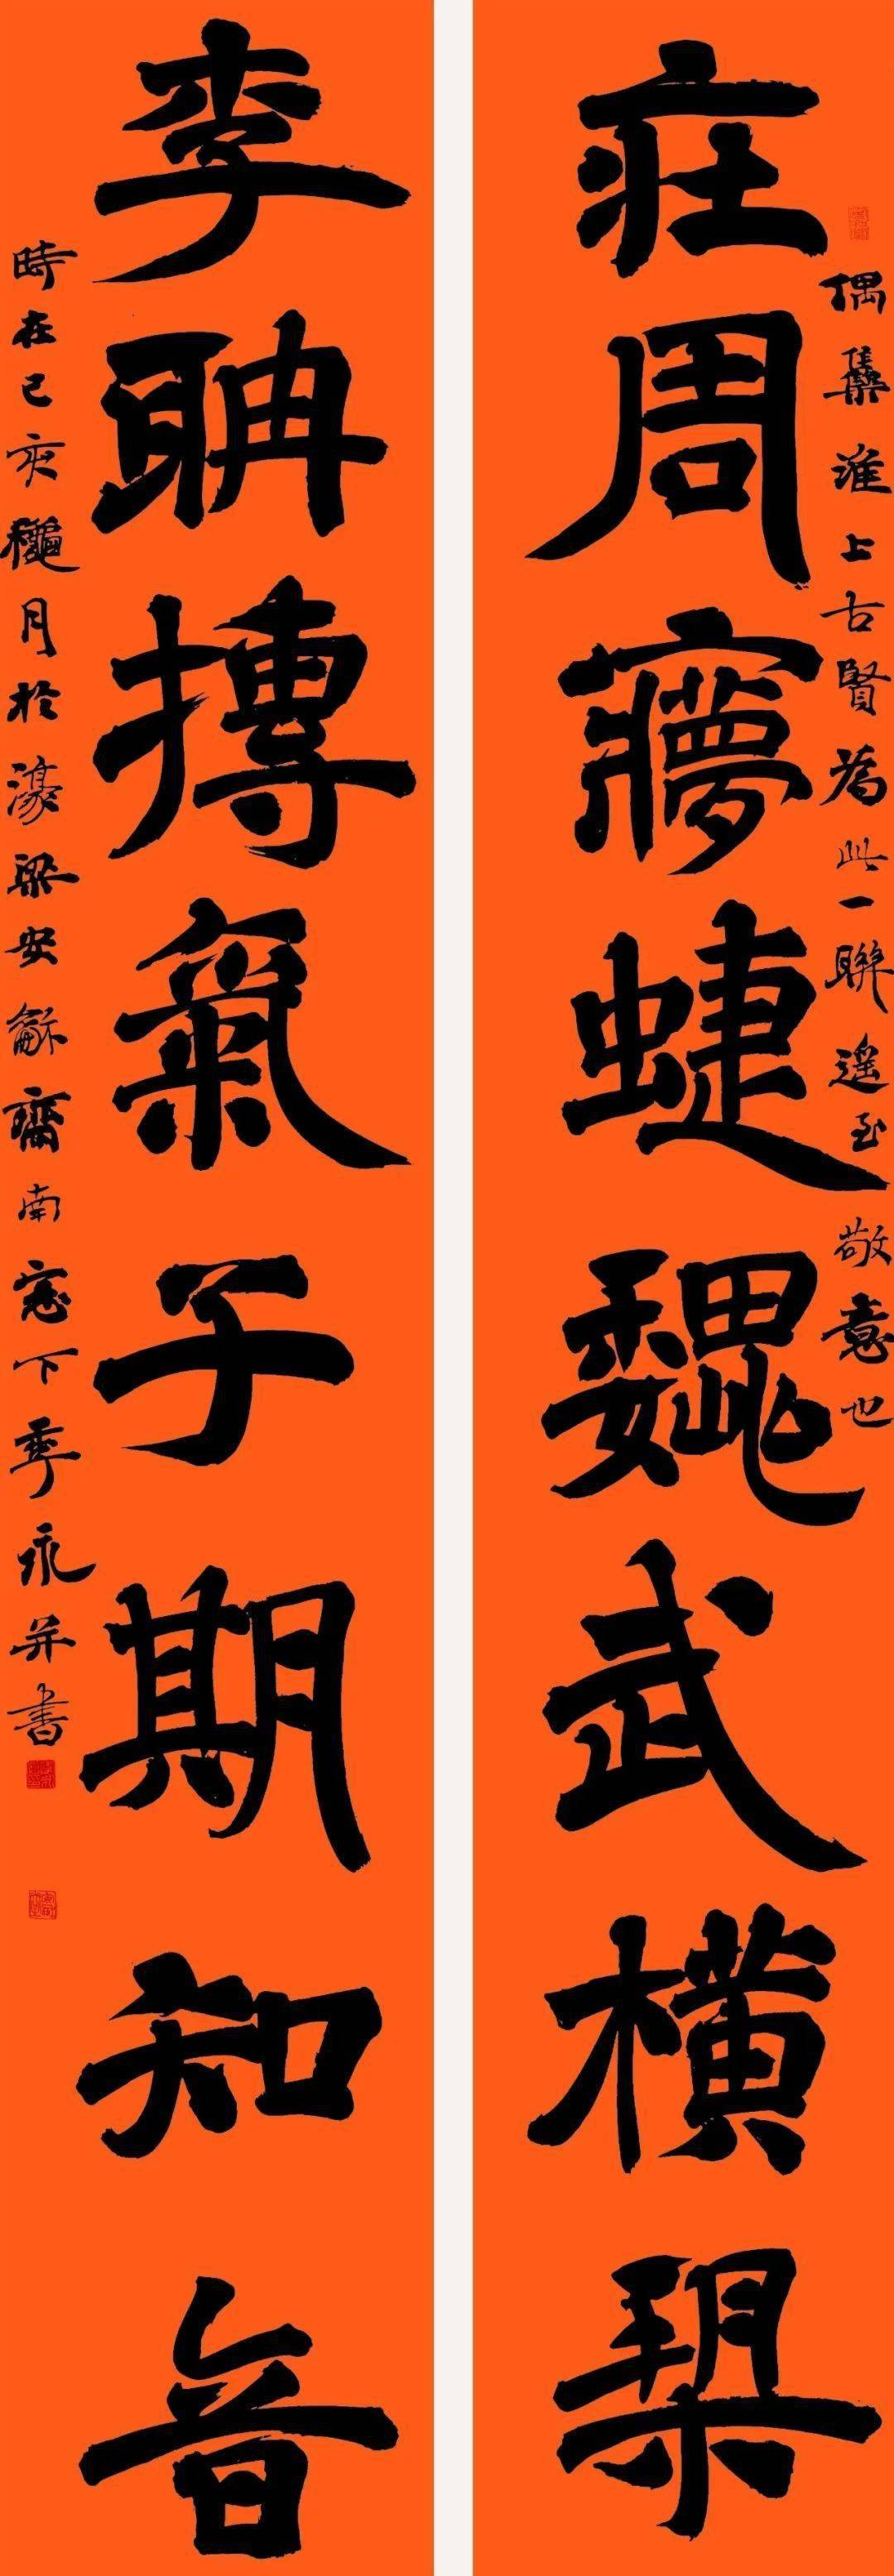 蚌埠市书法家协会主席季永书法作品欣赏(图5)